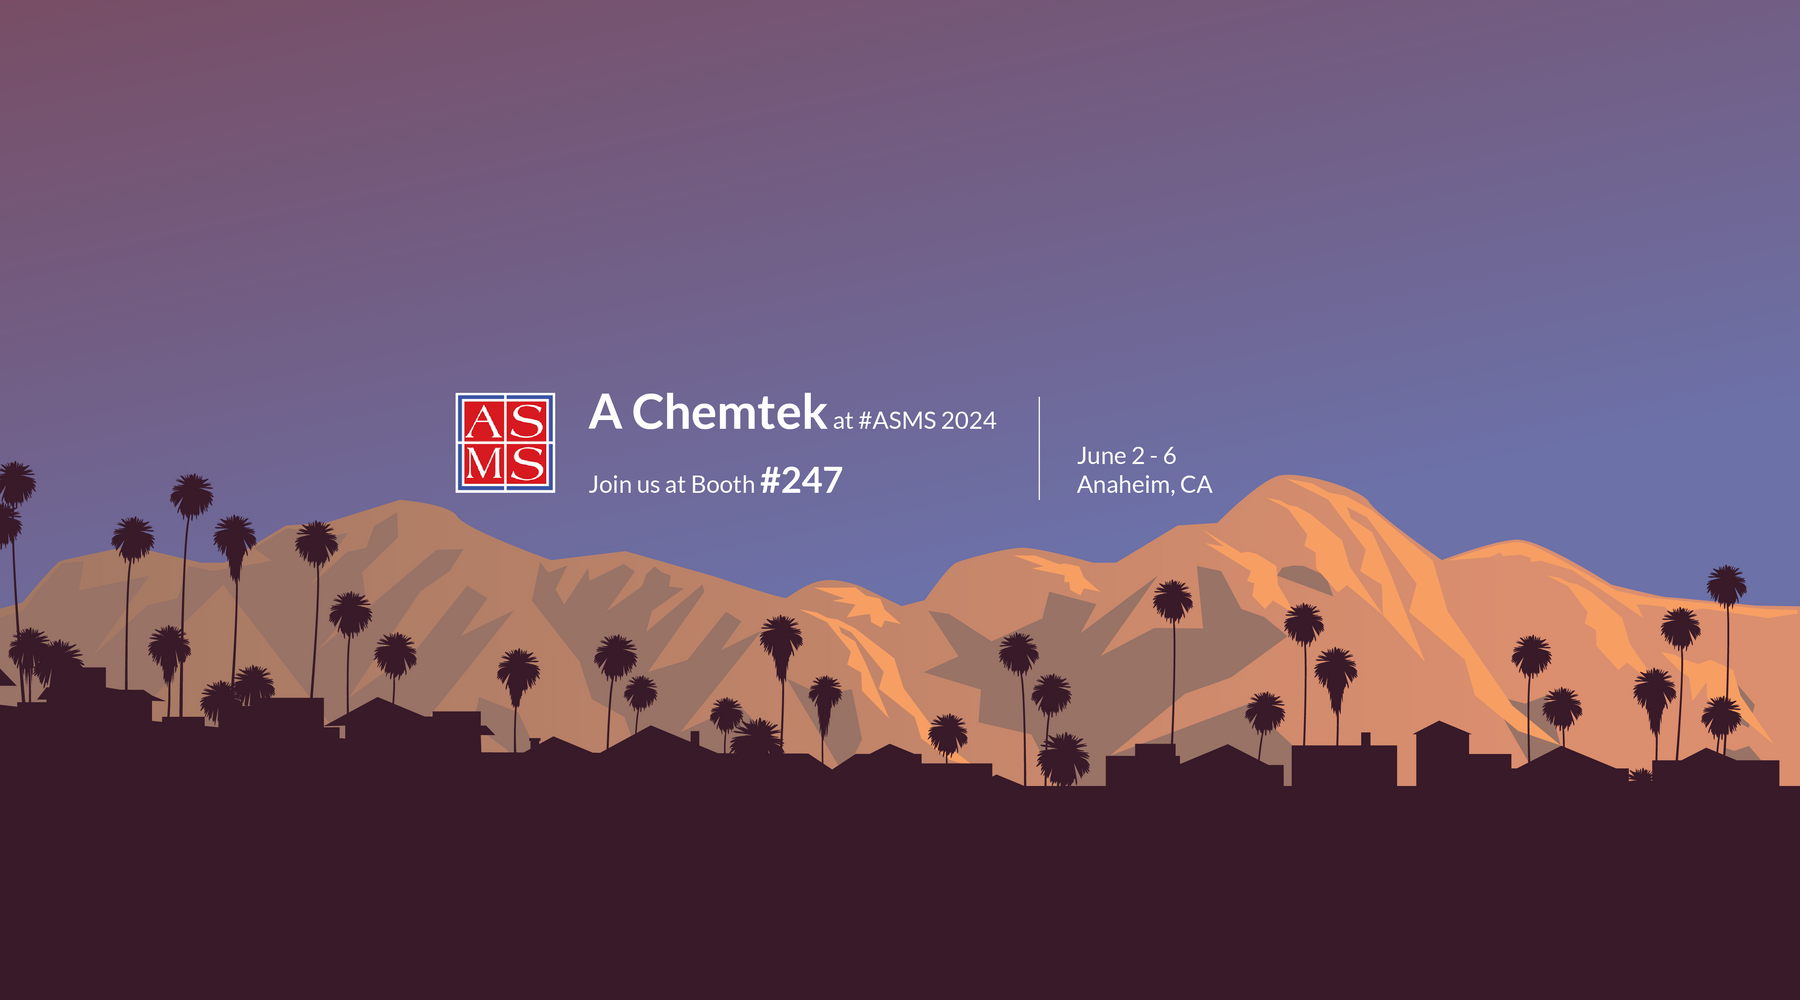 ASMS 2024 - A Chemtek